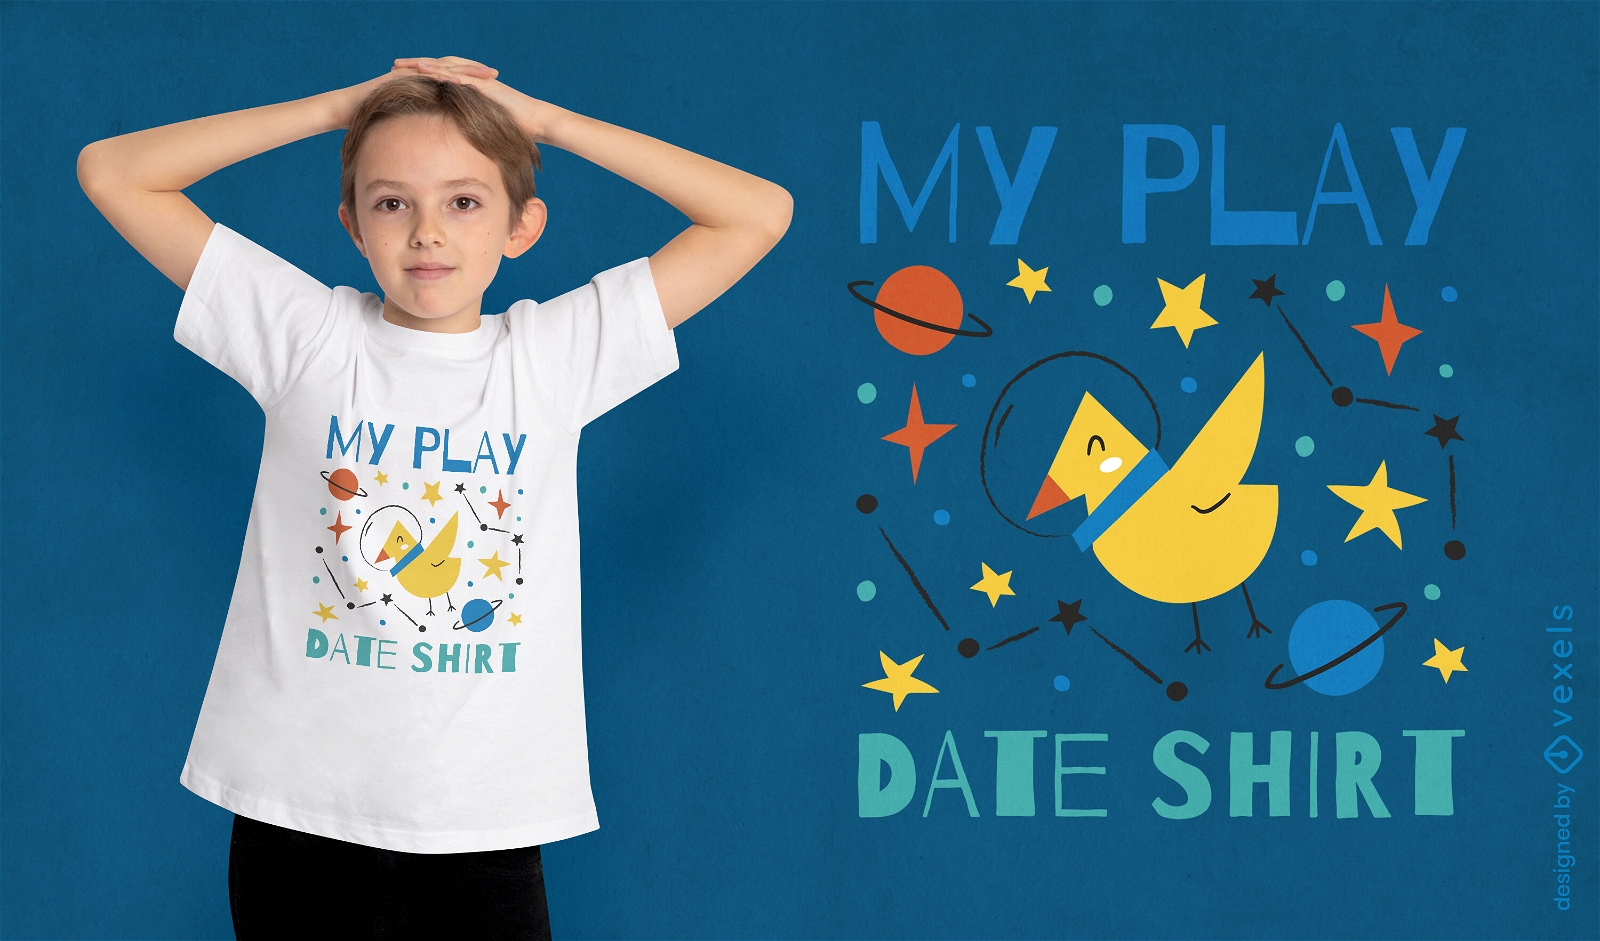 Play date shirt t-shirt design